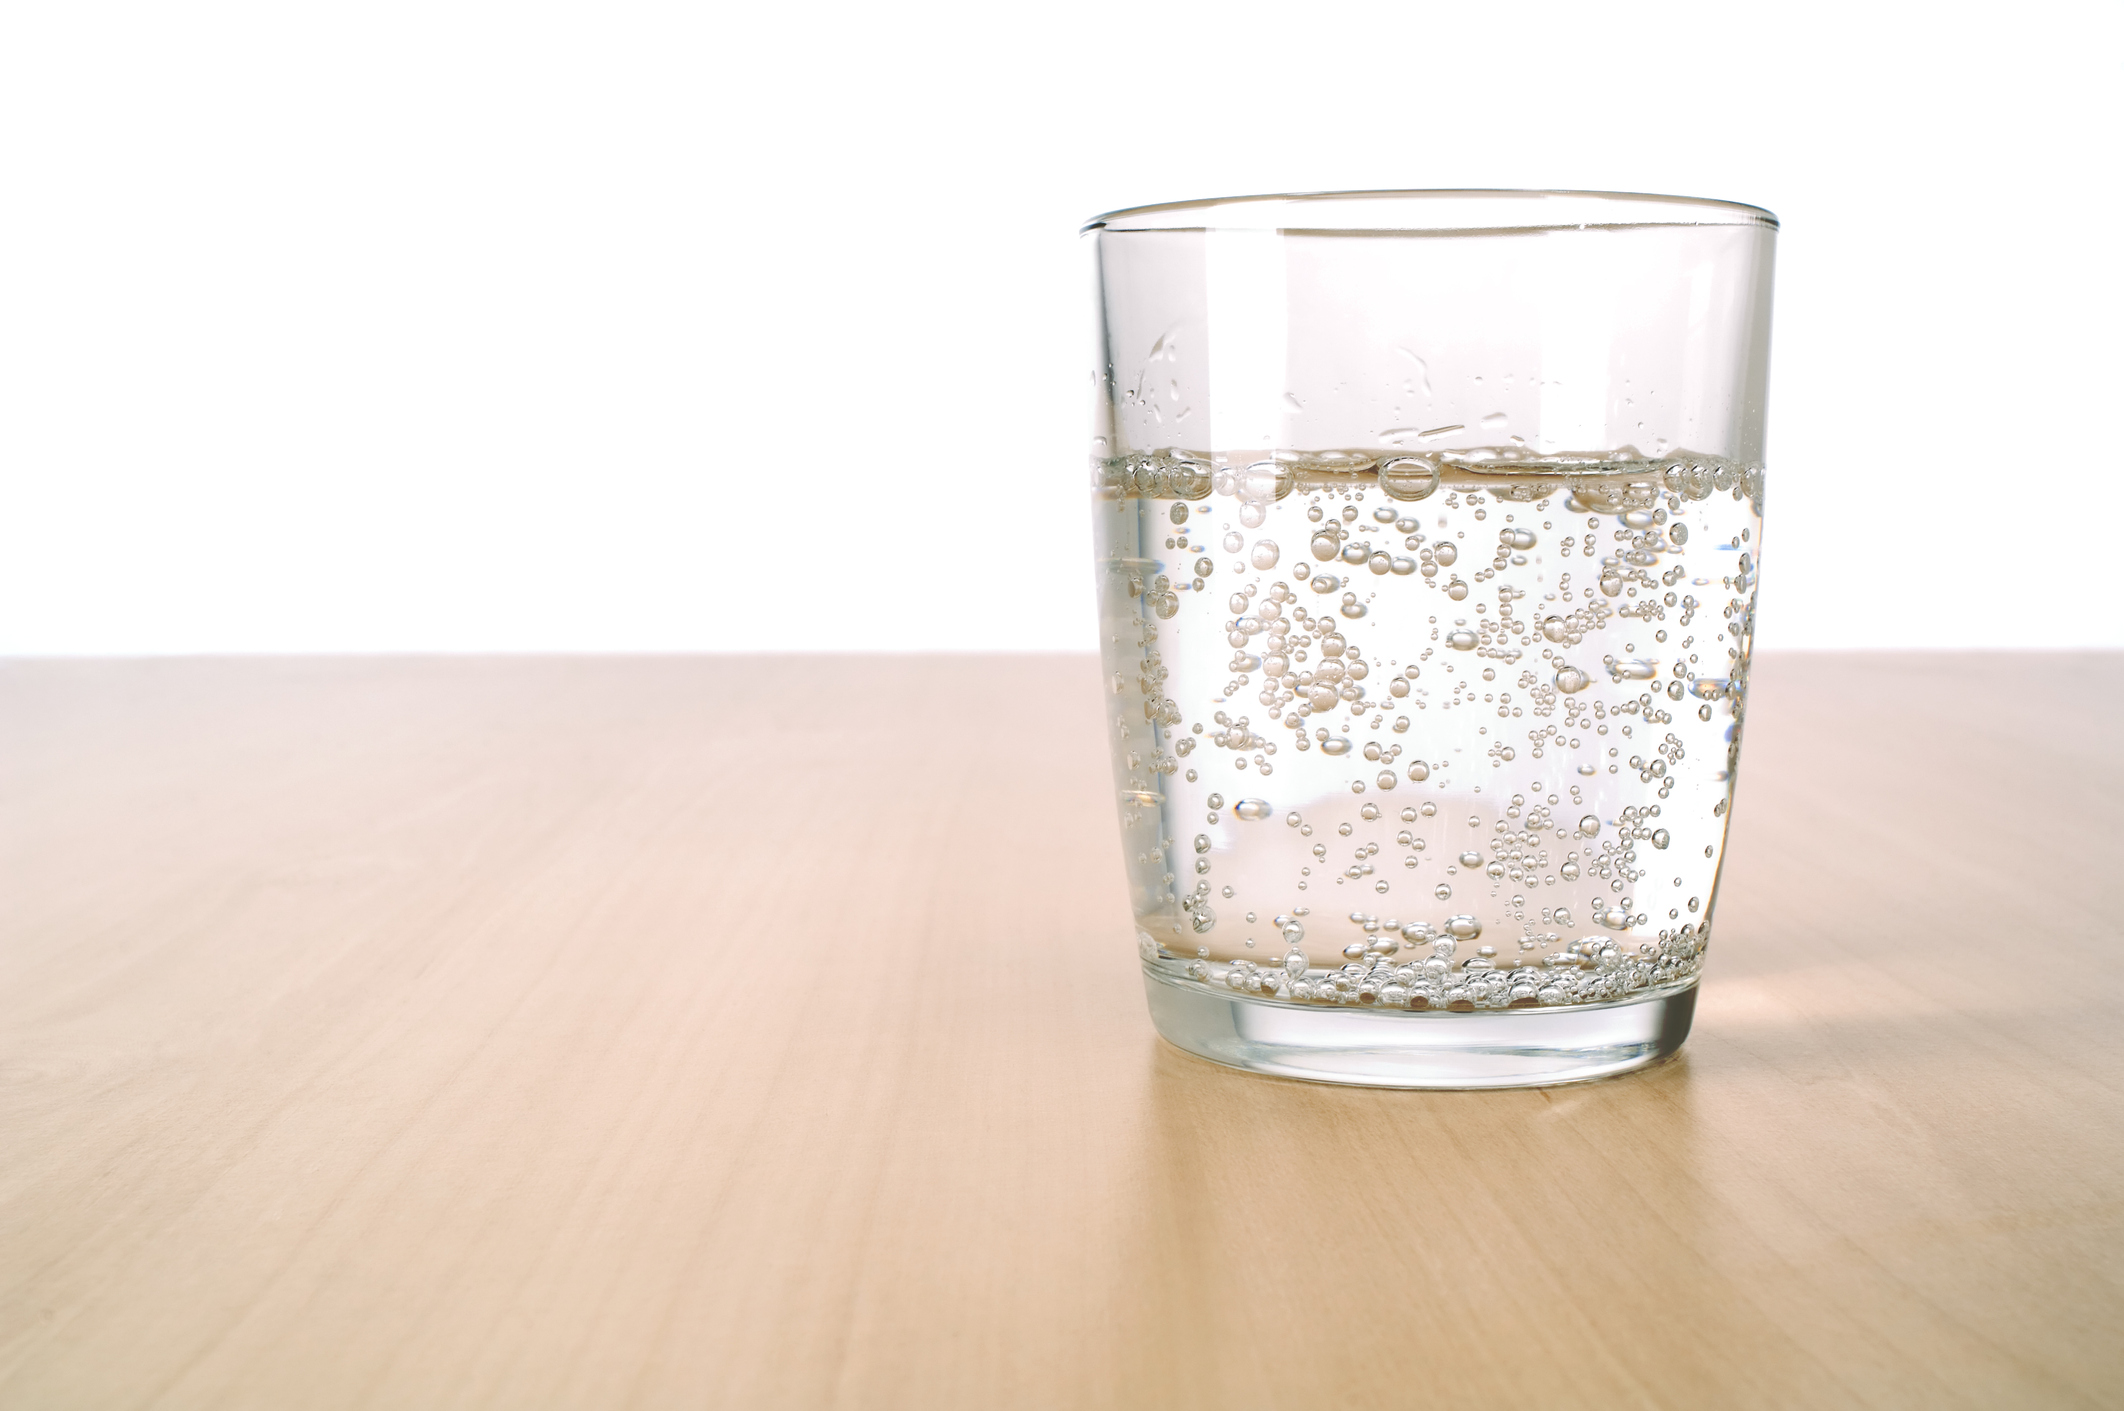 Реакция в стакане воды. Стакан воды. Стаканы для воды стеклянные. Стакан воды на столе. Стакан чистой воды.